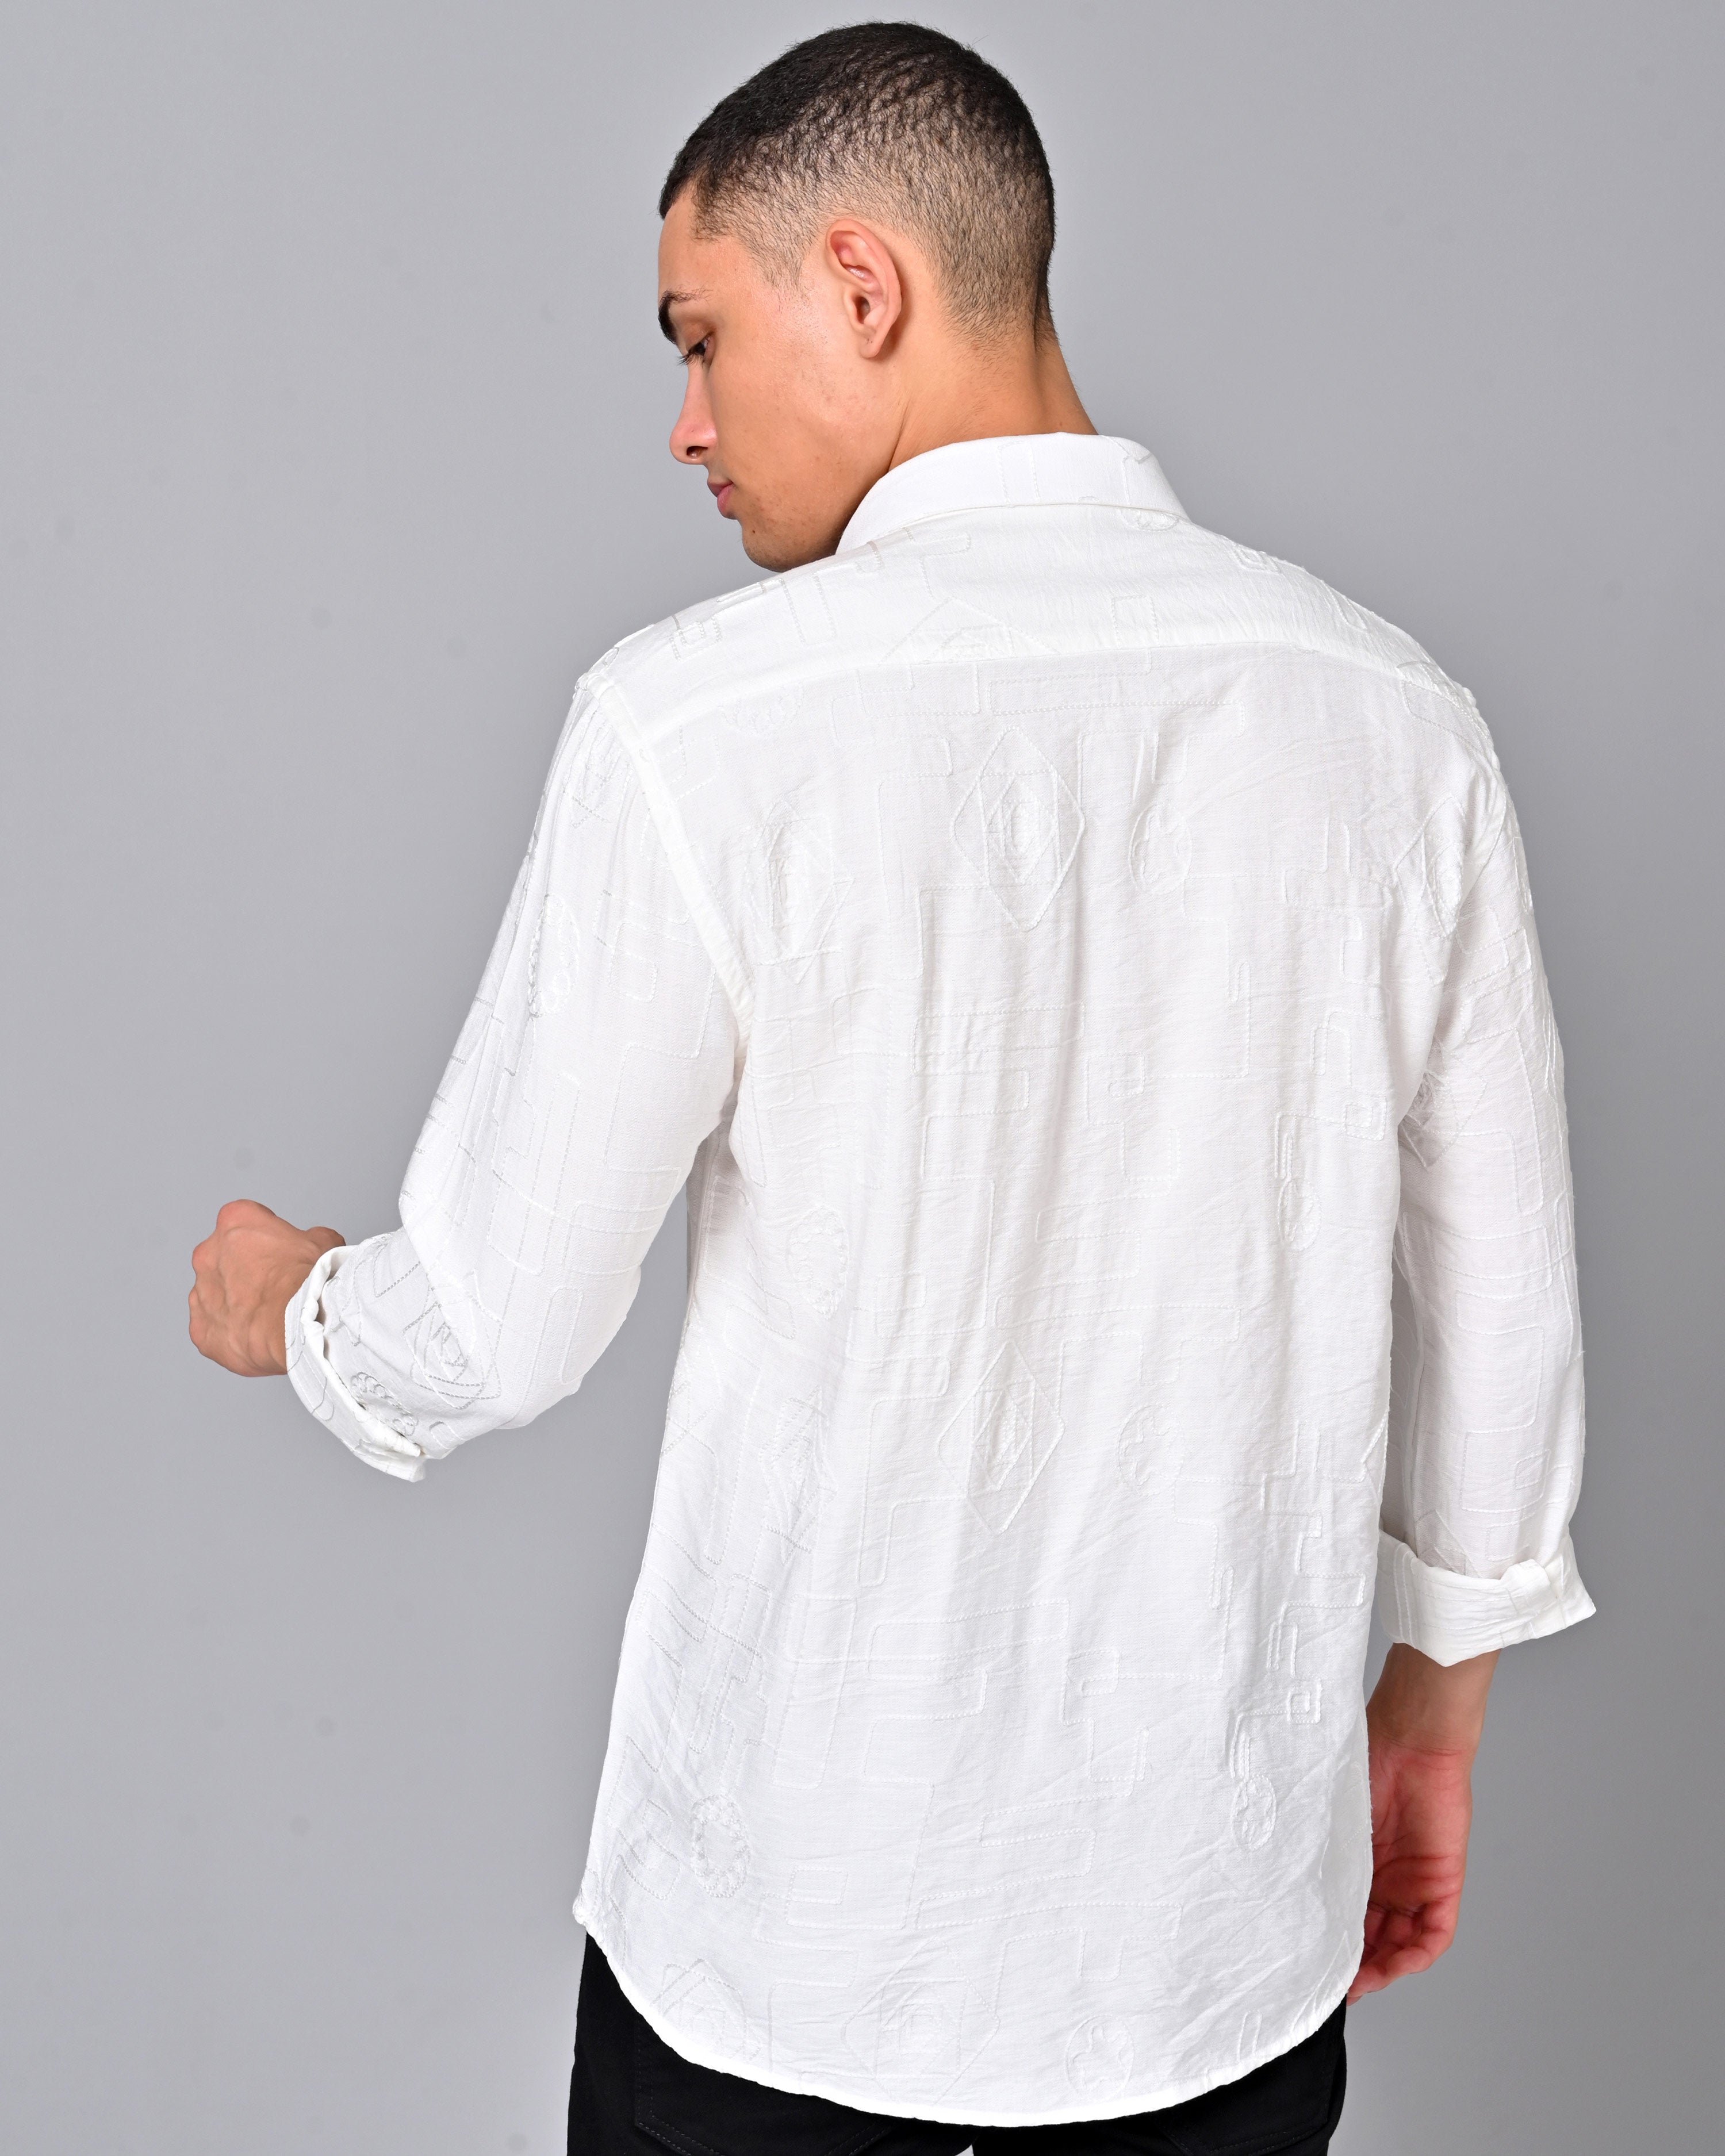 Men's Embroidered Full Sleeve White Shirt Online